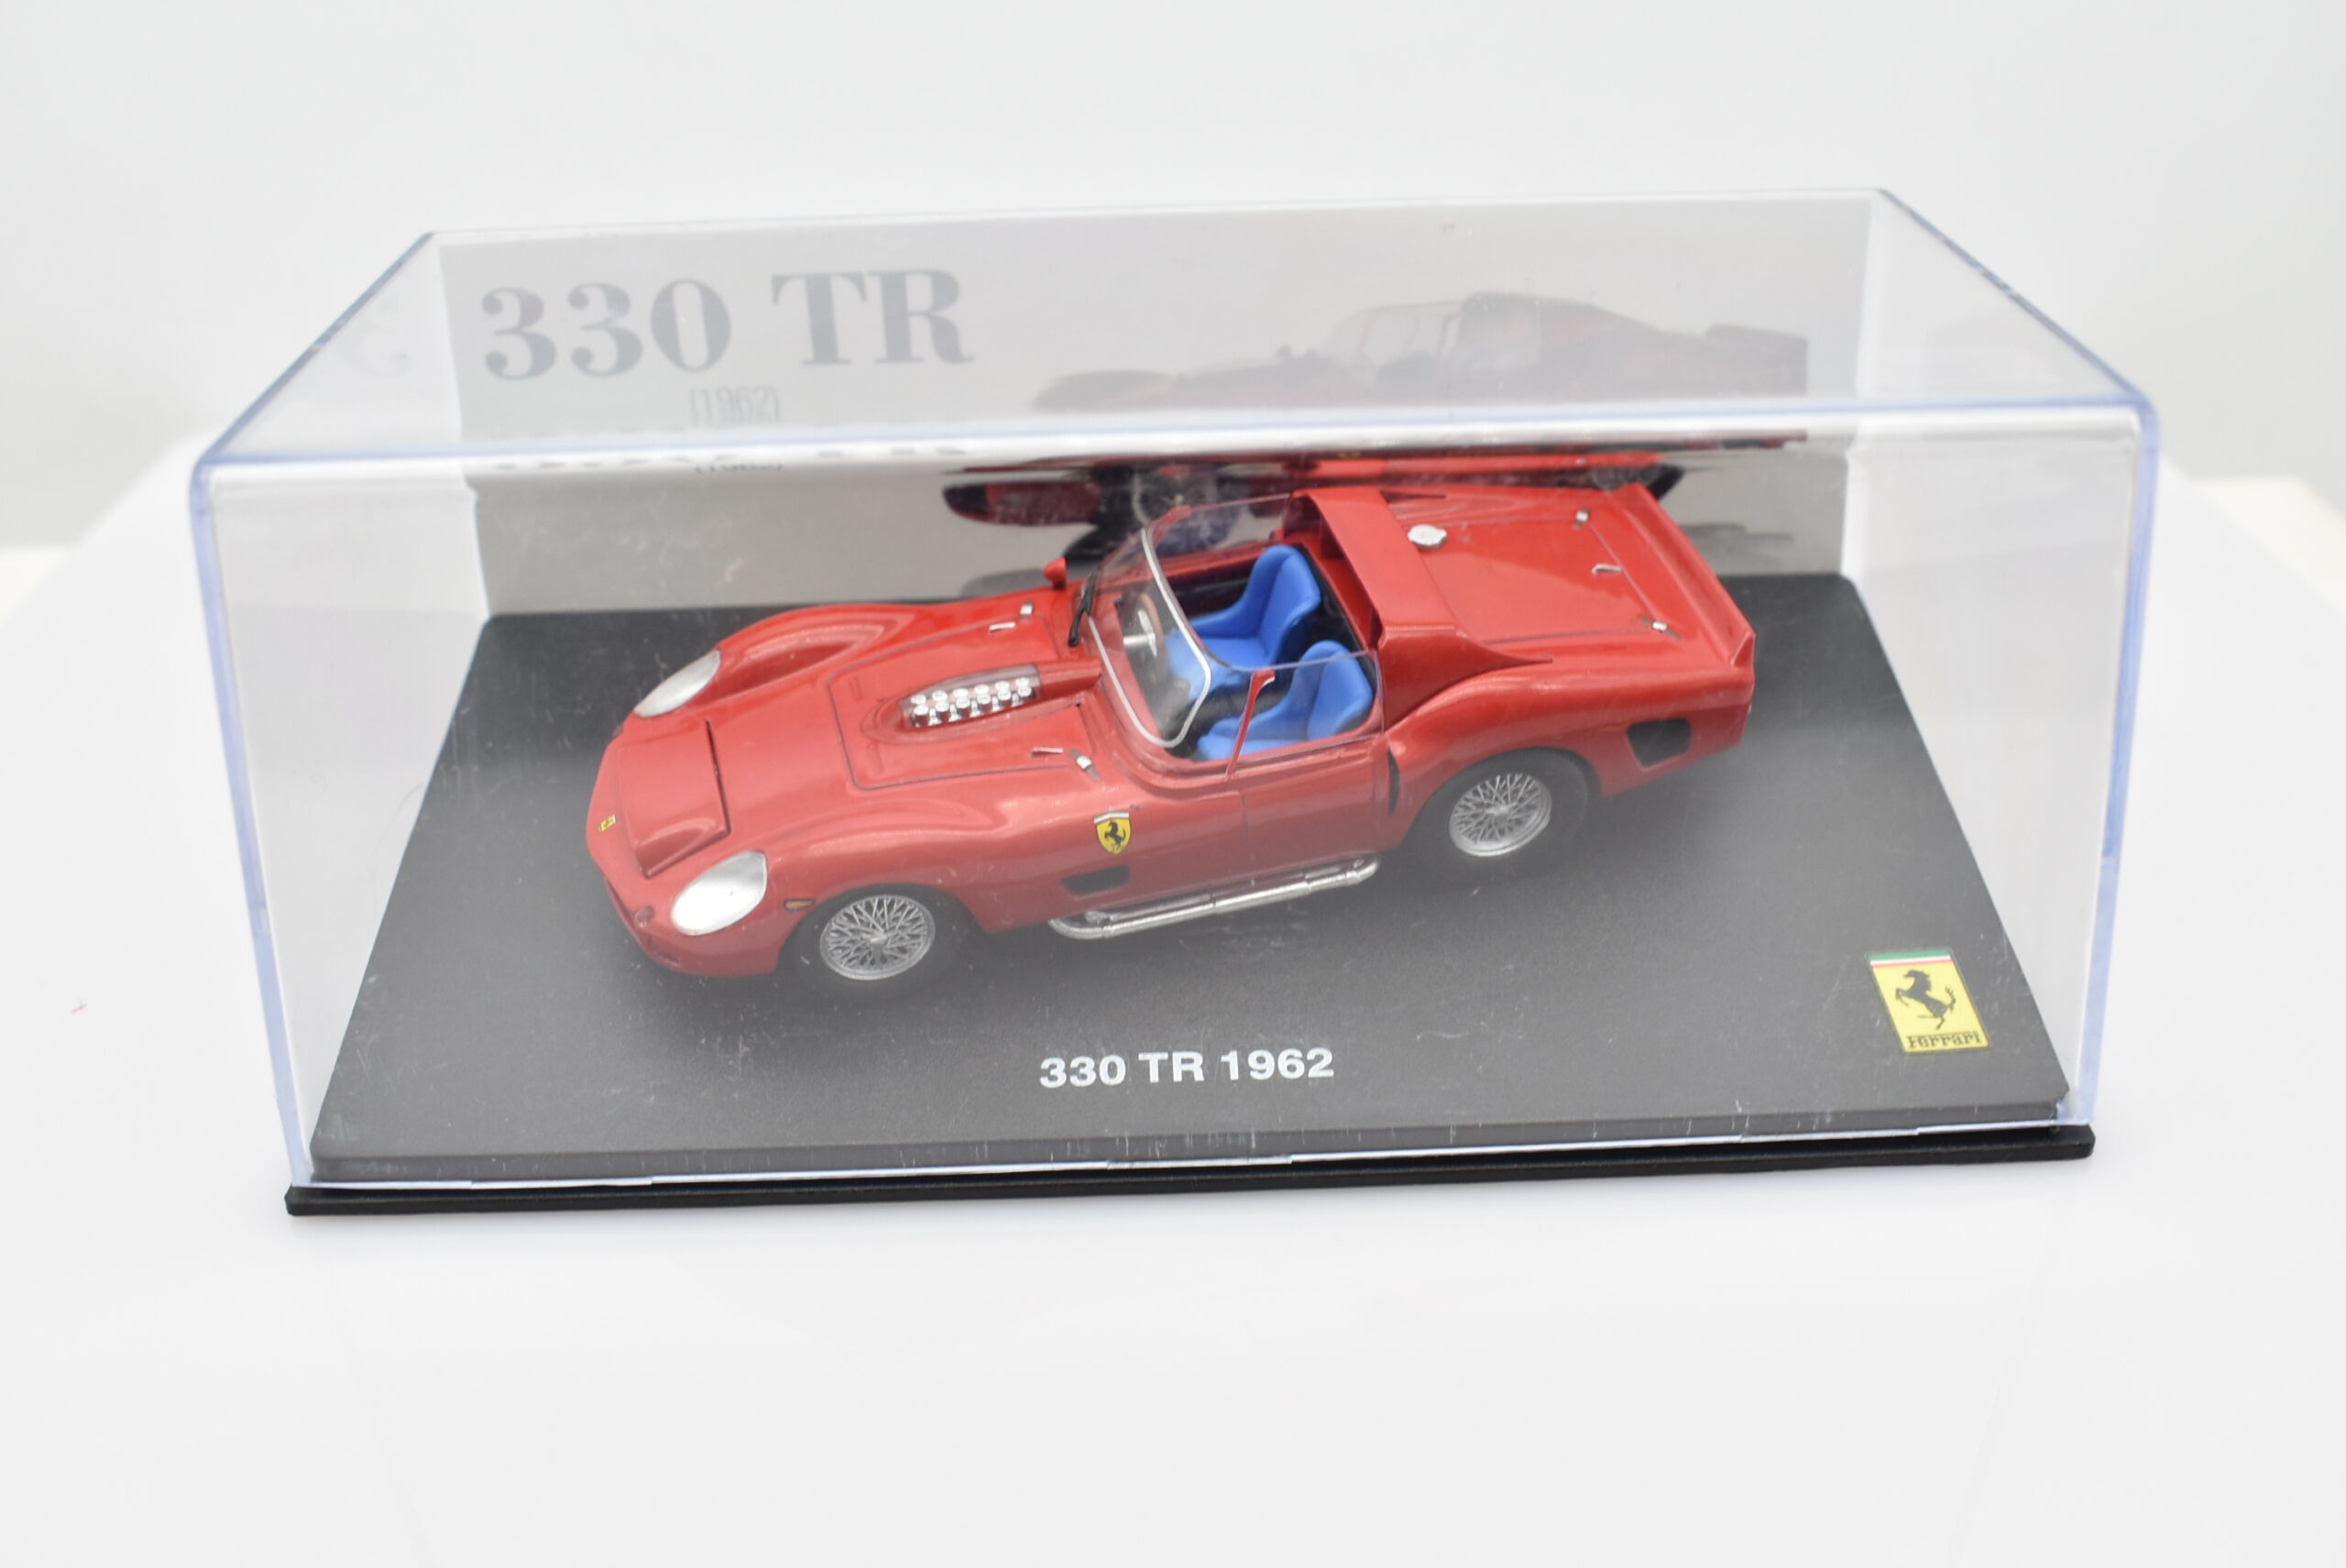 Modellino auto scala 1:43 Ferrari GT Collection 512 BB diecast modellismo  da collezione